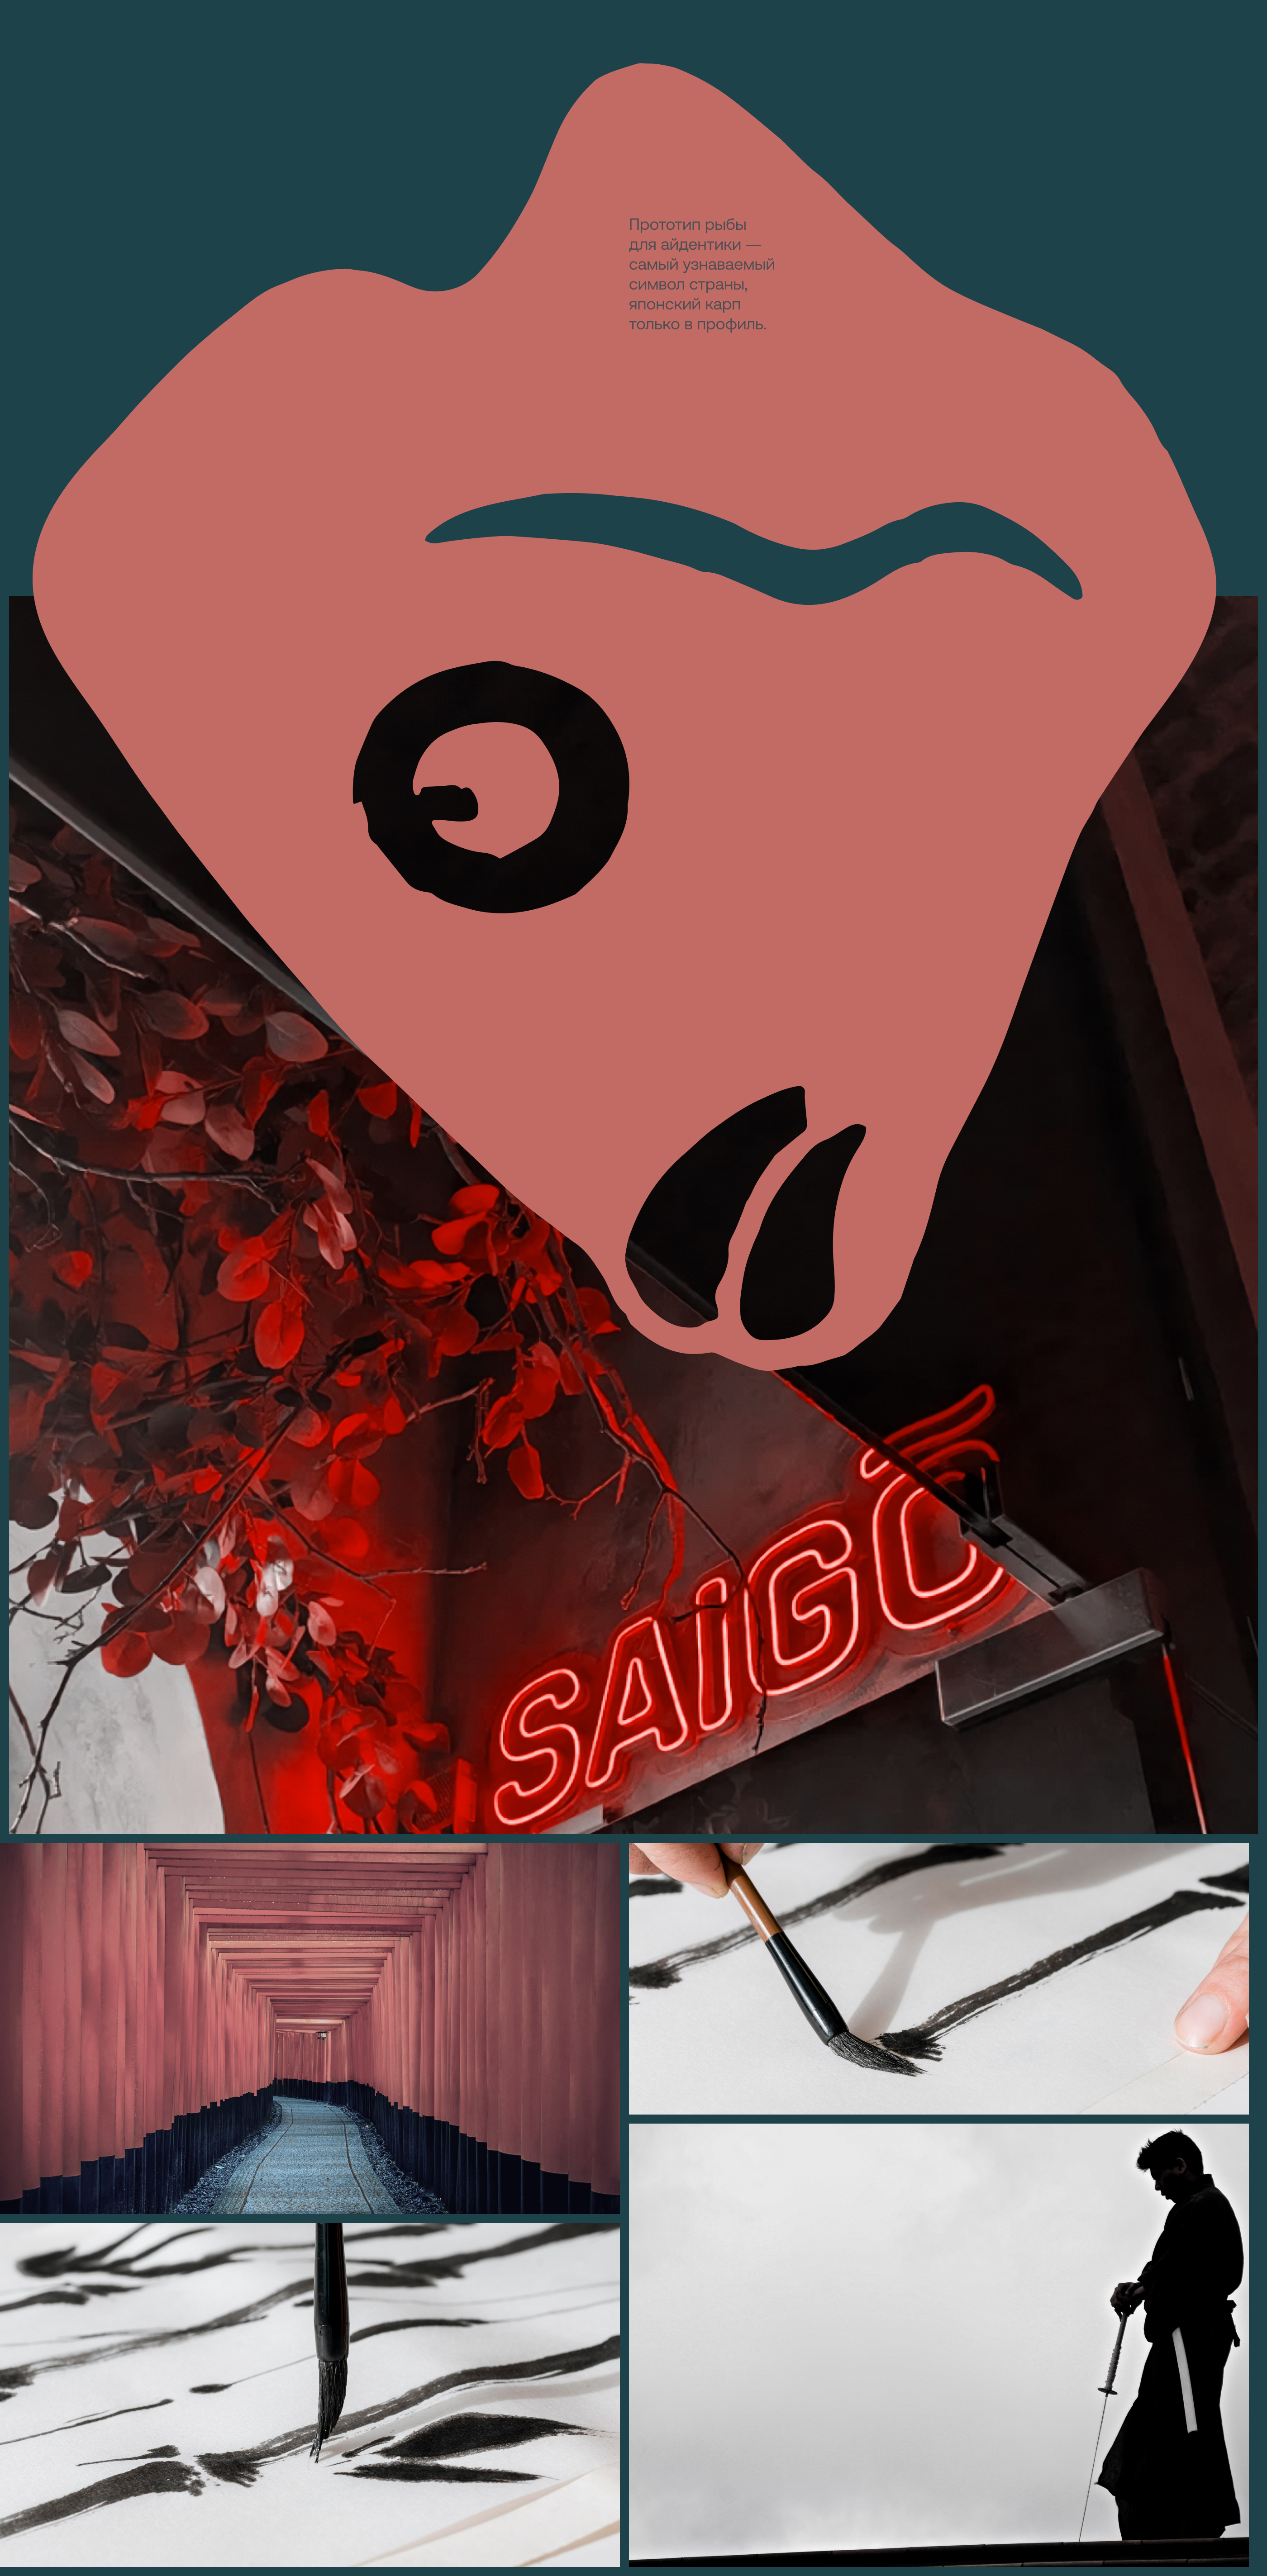 Лого & Айдентика для ресторана Saigo — Изображение №7 — Брендинг, Иллюстрация на Dprofile